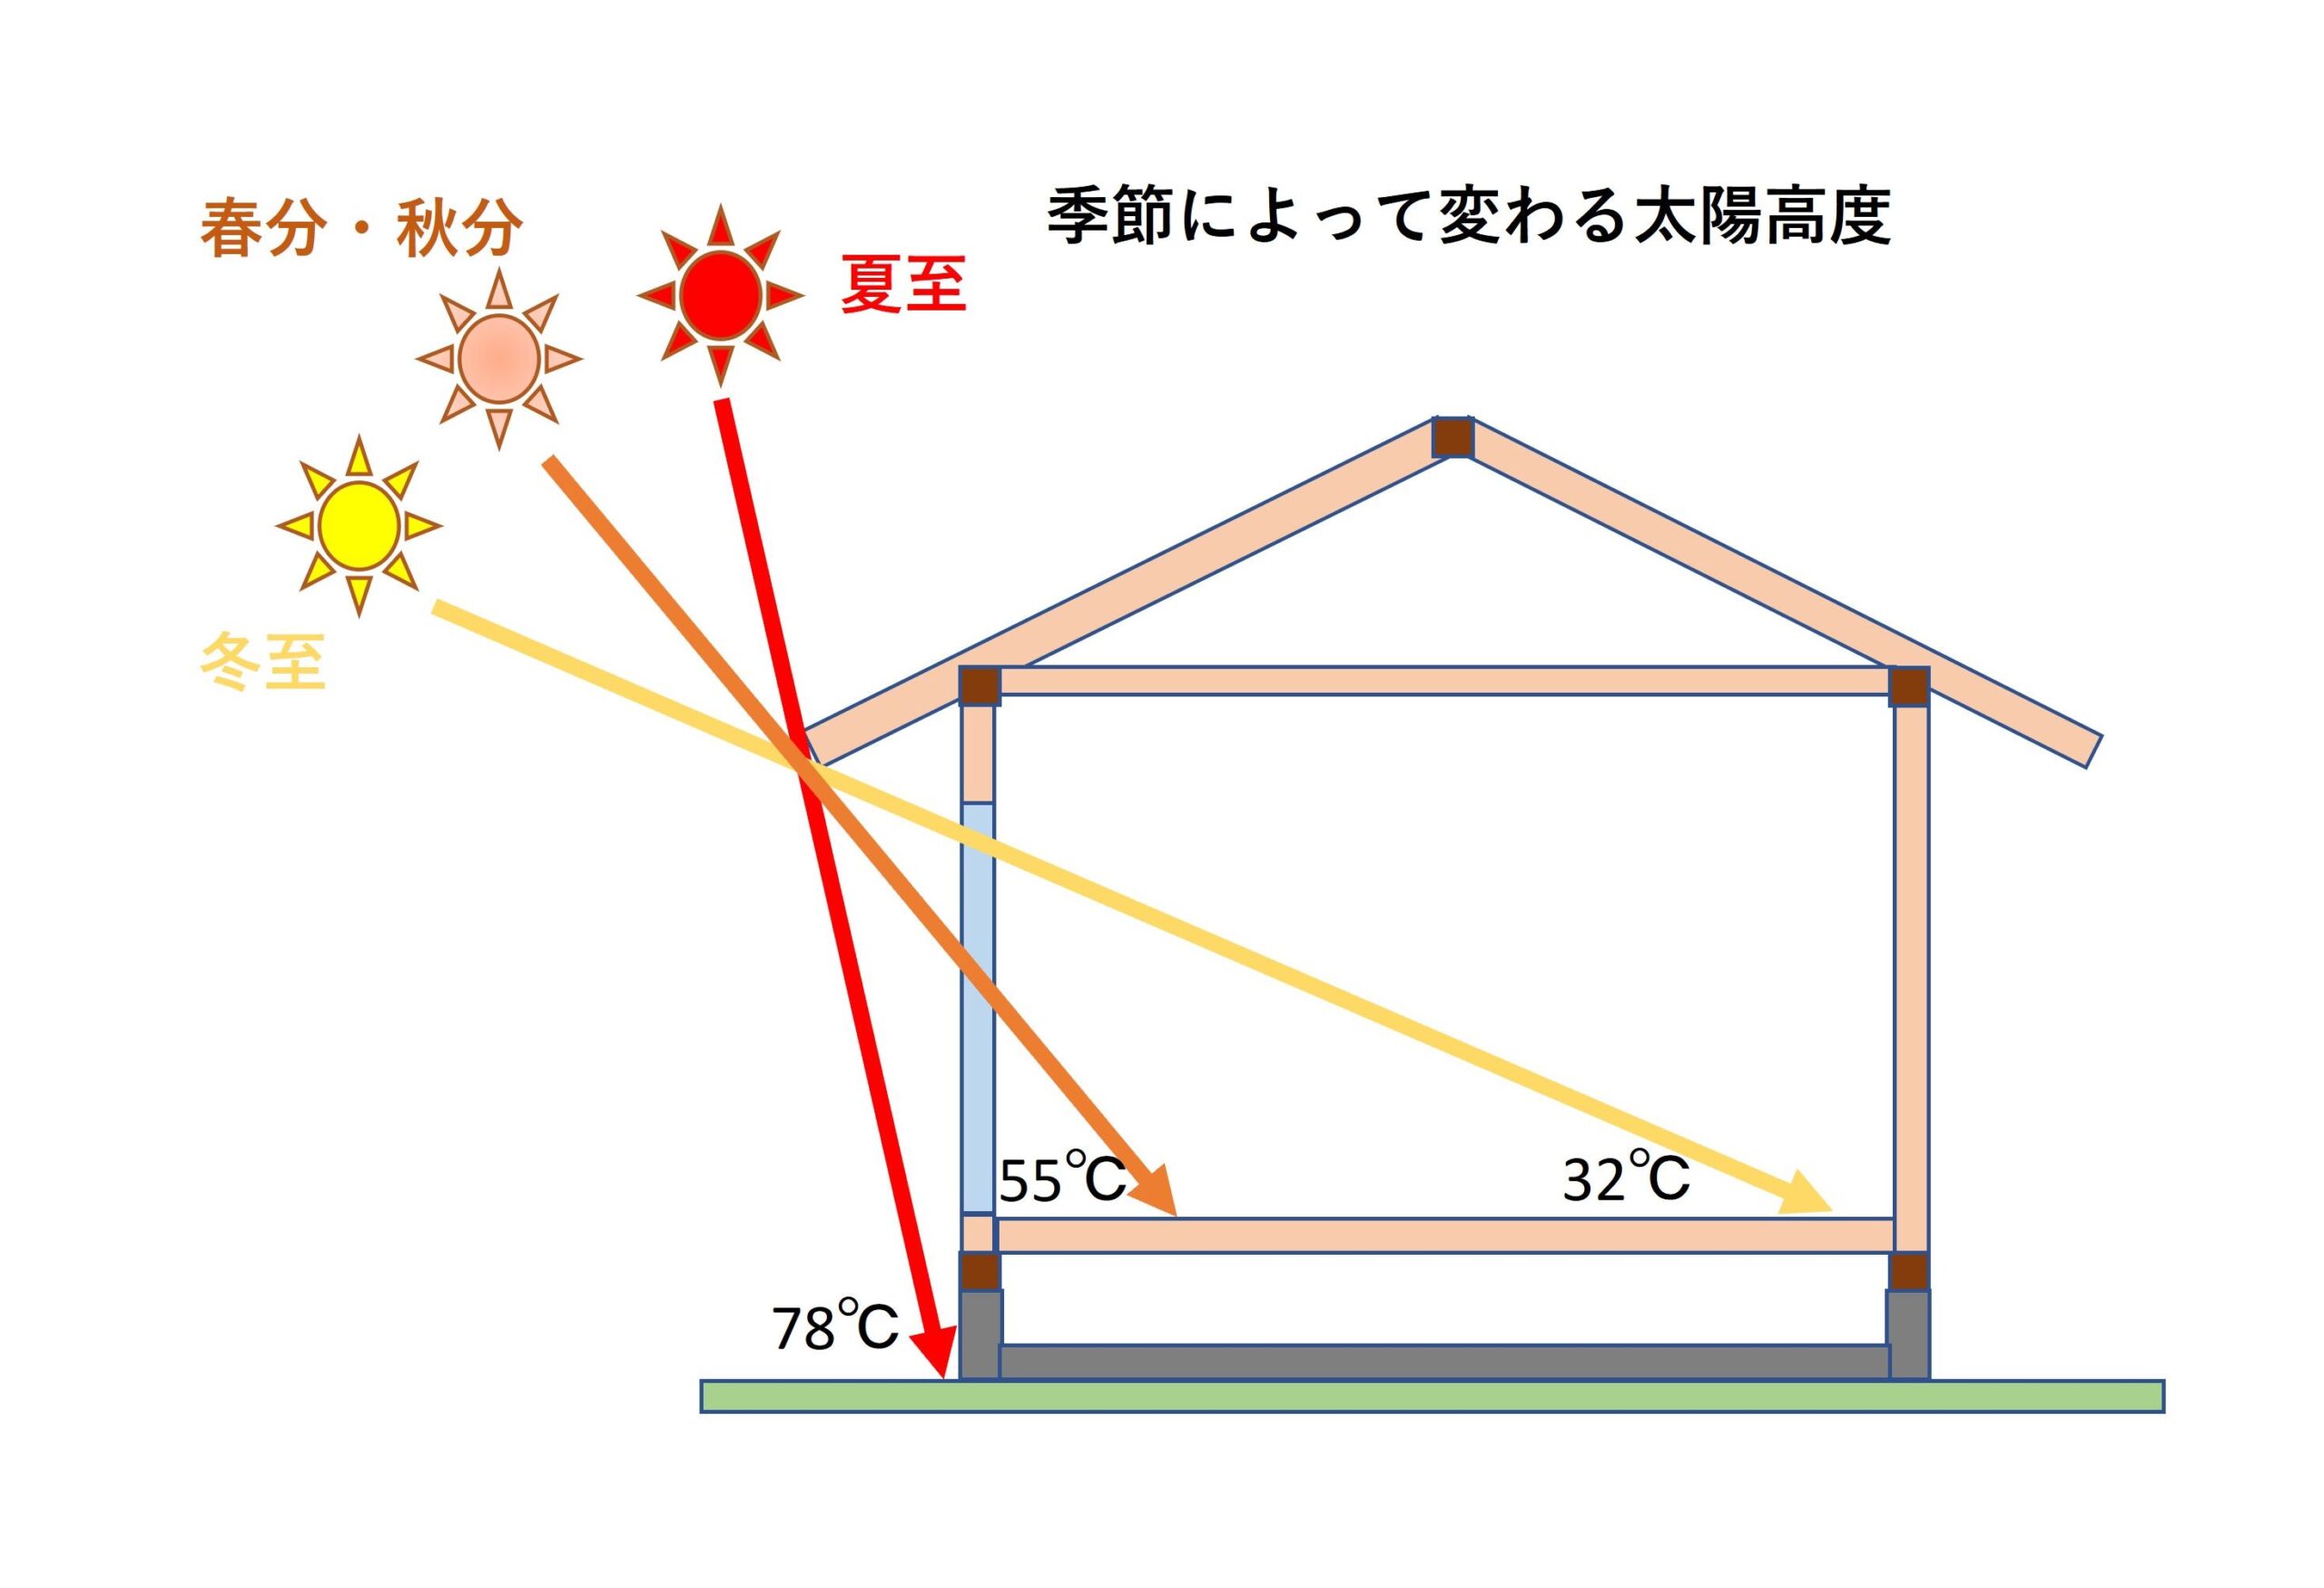 夏に涼しい家にするには？日射遮蔽と空調計画と湿度管理